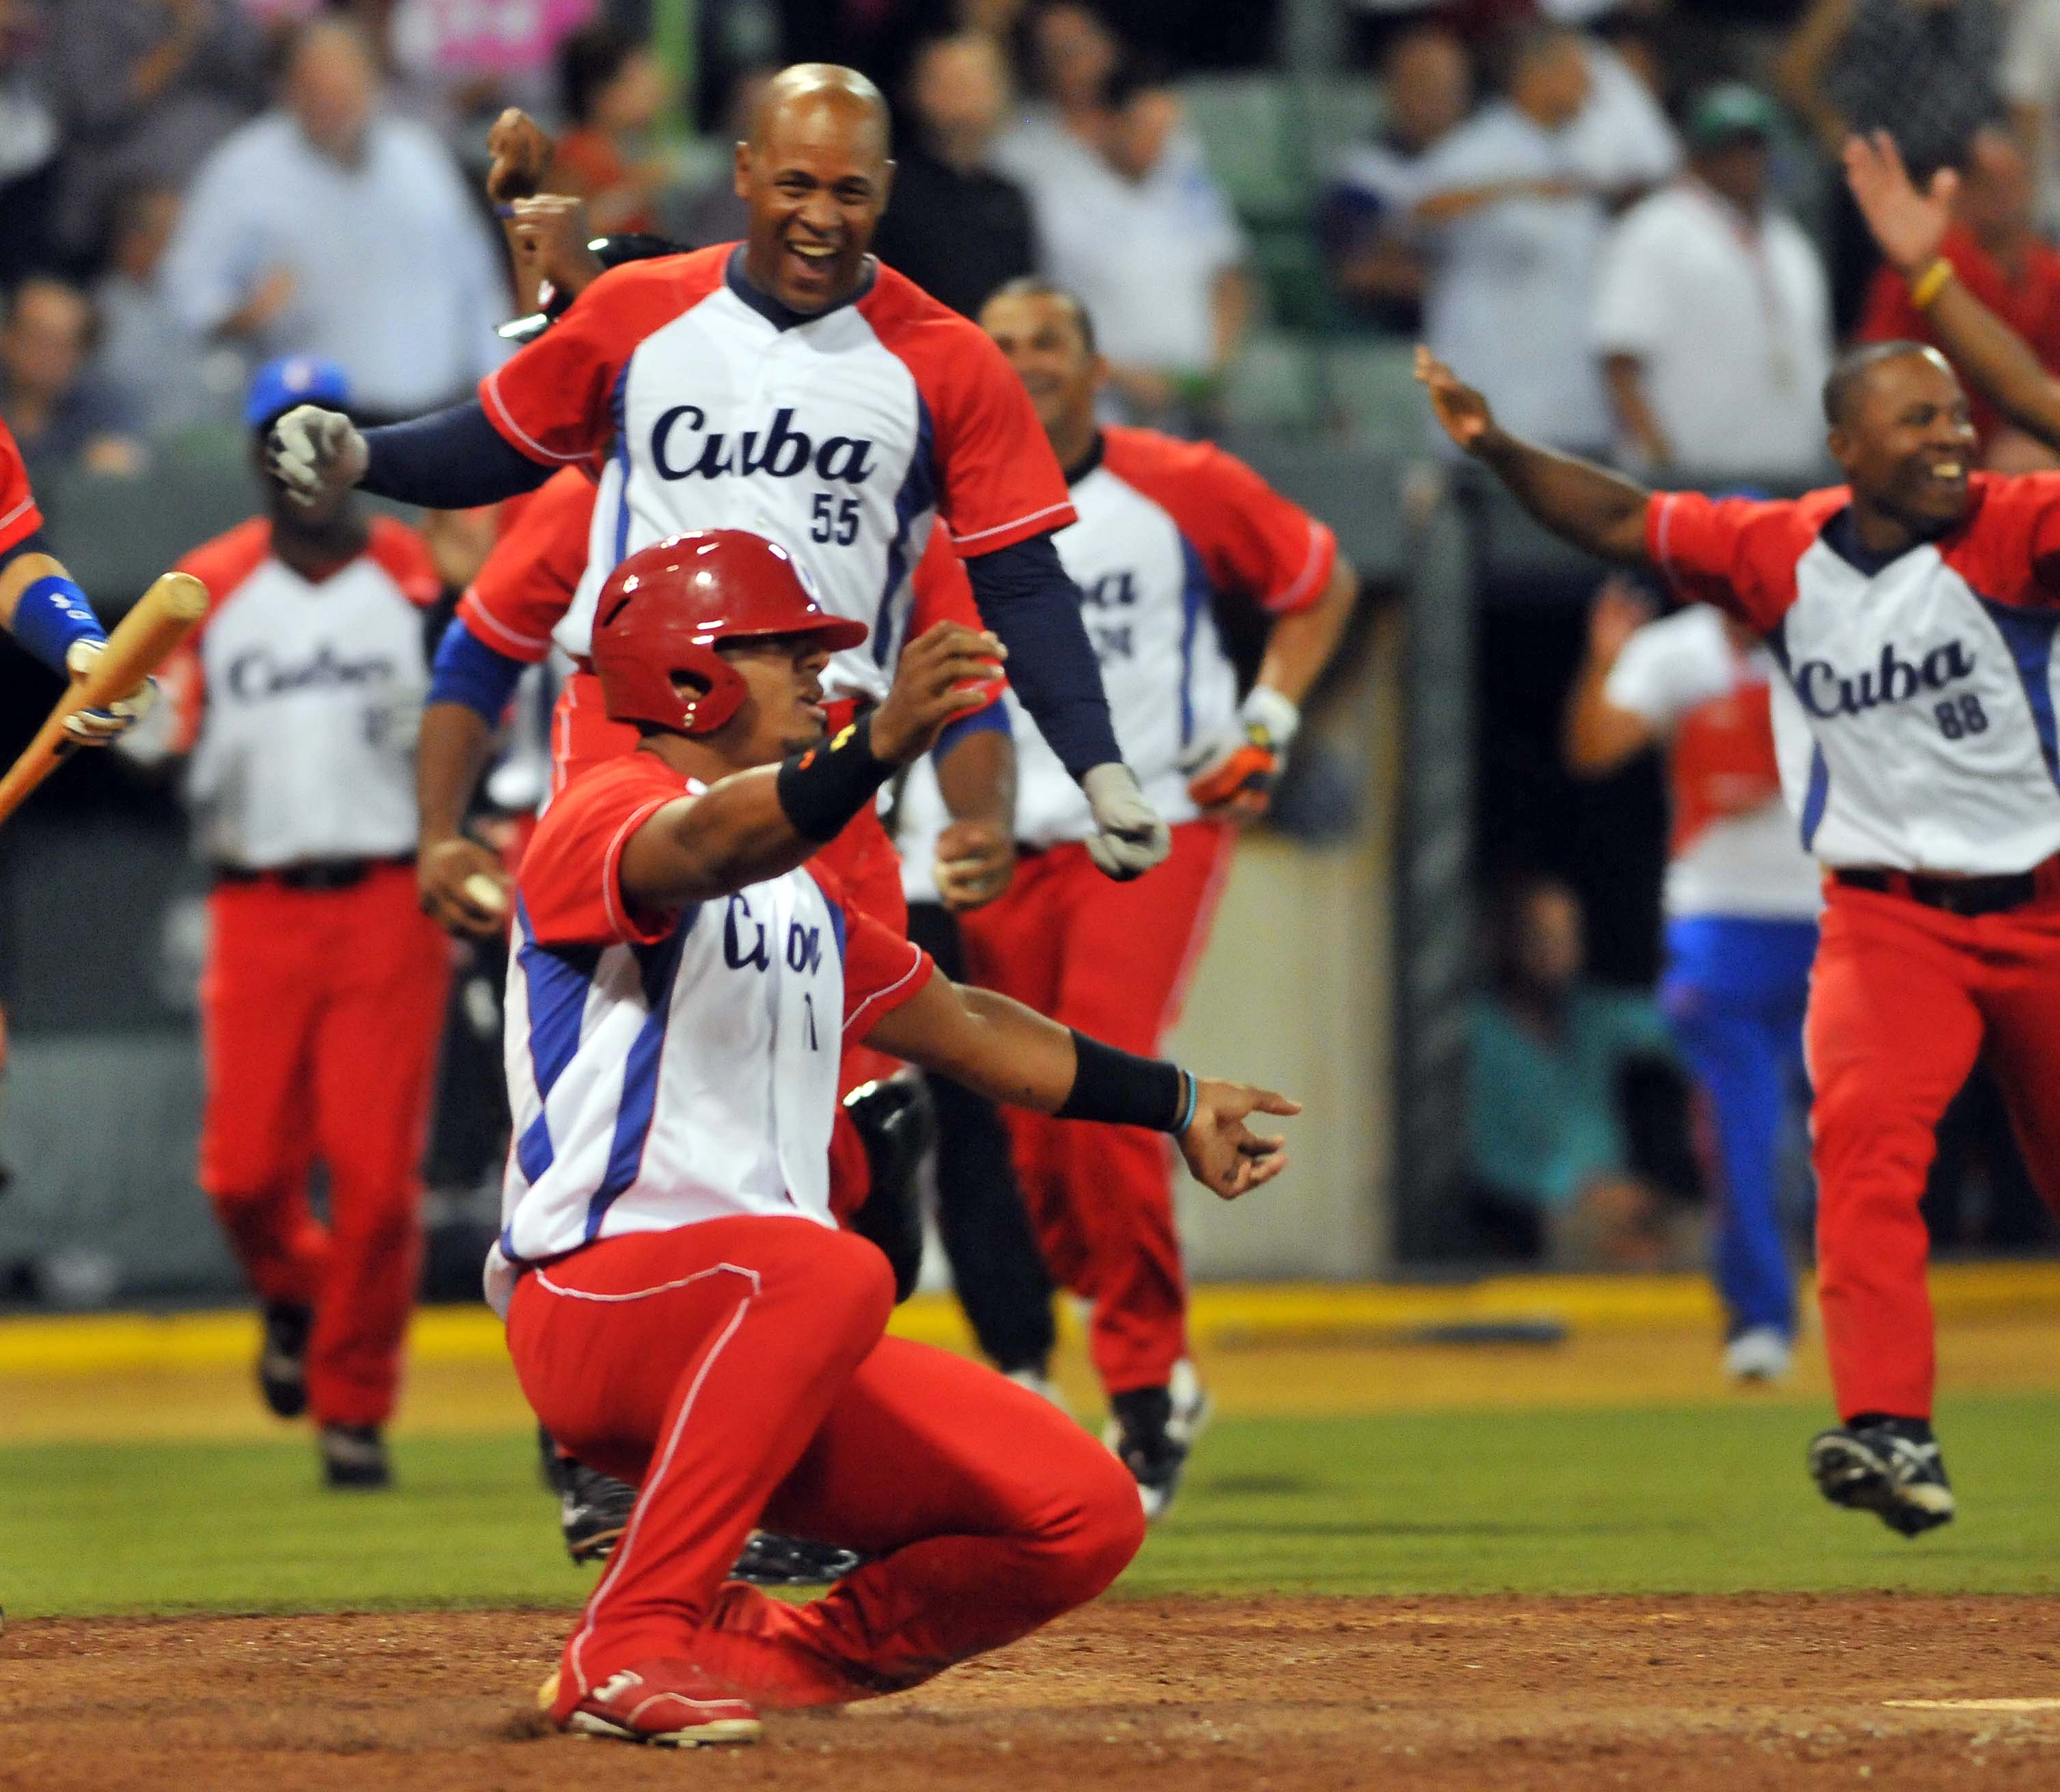 Cuba anunció su equipo a los Juegos Panamericanos de Toronto, donde repetirán algunos que estuvieron en la Serie del Caribe. Foto: Ricardo López Hevia